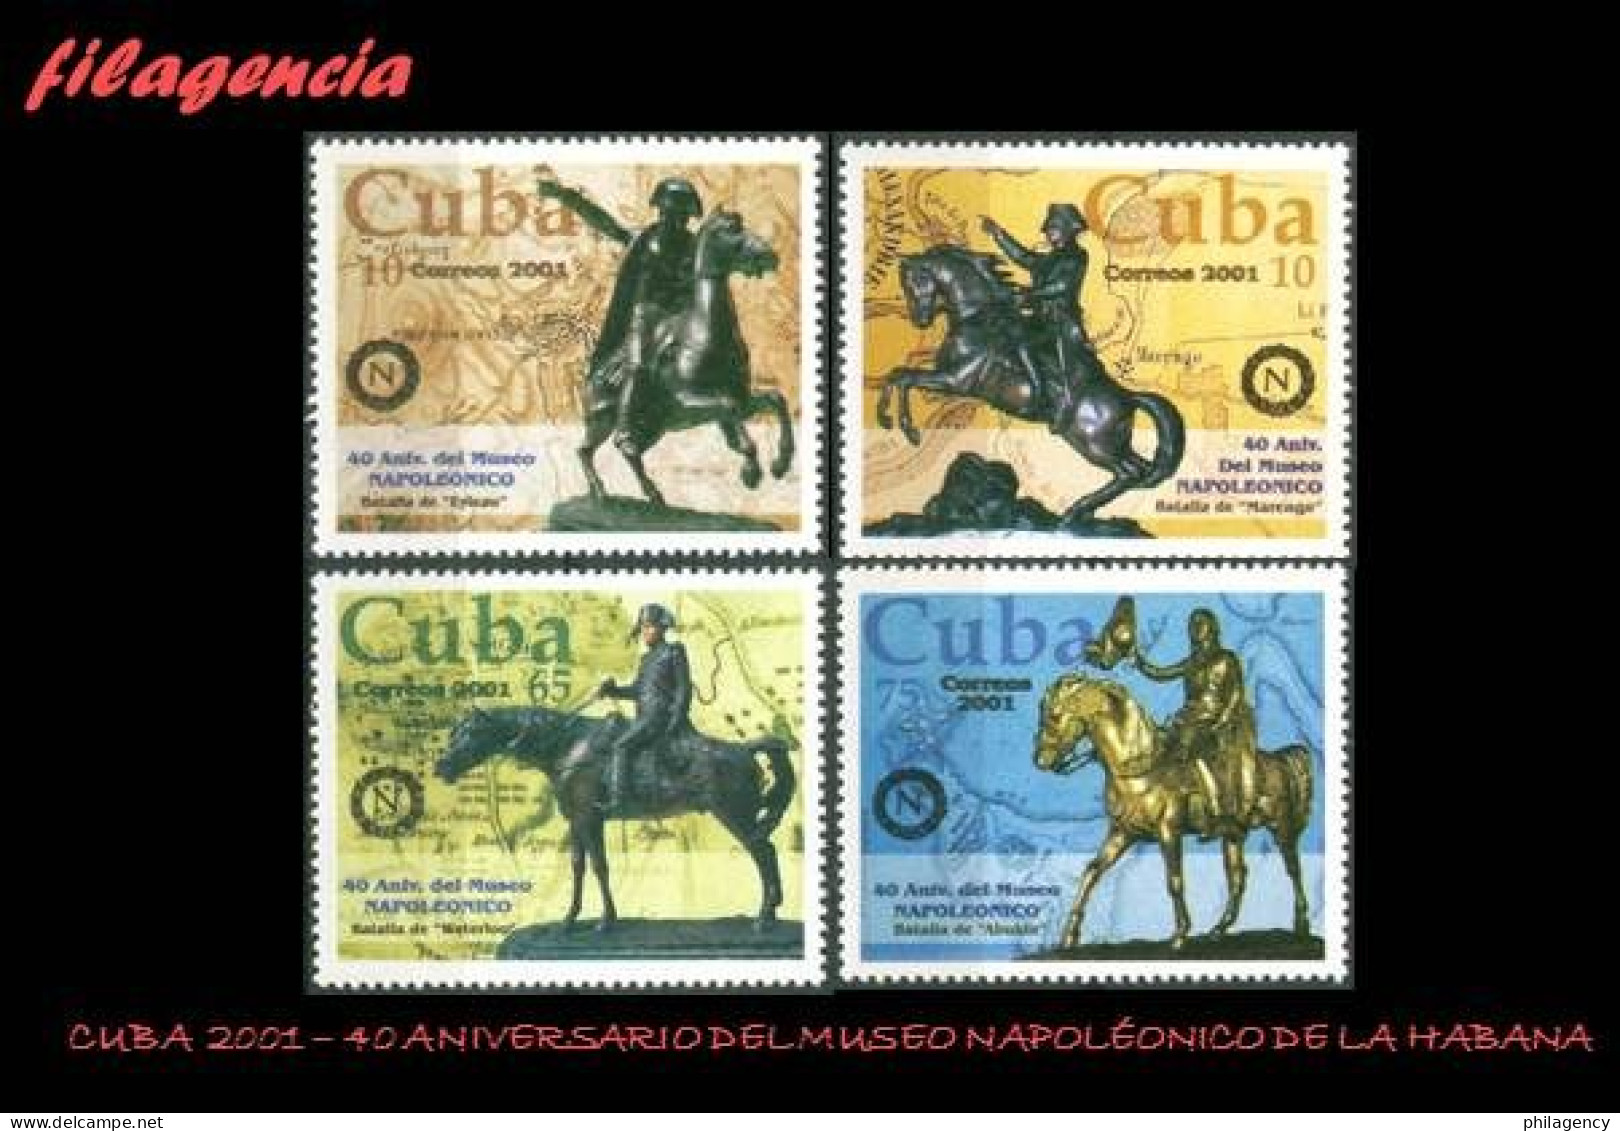 CUBA MINT. 2001-23 40 ANIVERSARIO DEL MUSEO NAPOLEÓNICO. BATALLAS DE NAPOLEÓN BONAPARTE - Nuevos